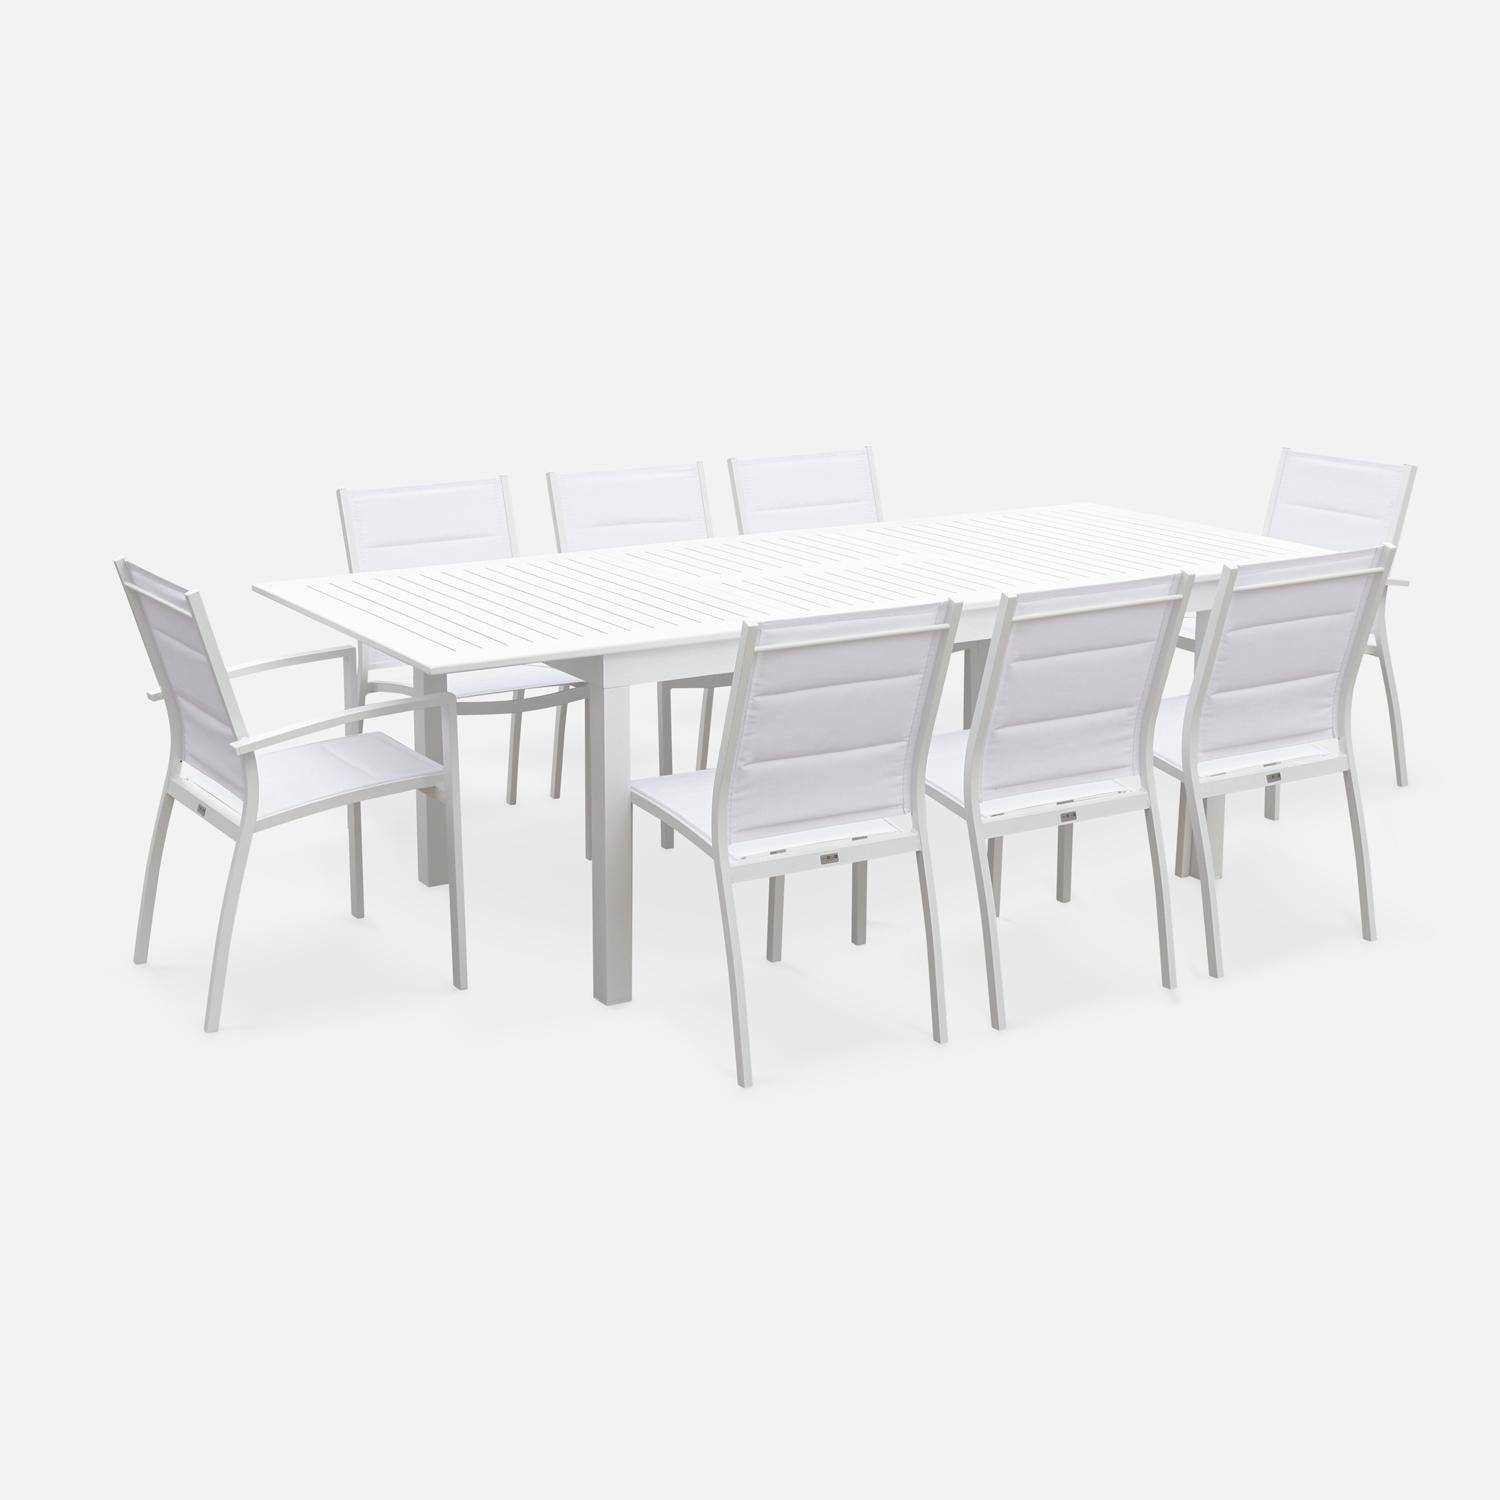 Chicago set, 1 tuintafel met verlengstuk, 8 stoelen uit aluminium en textileen Photo4